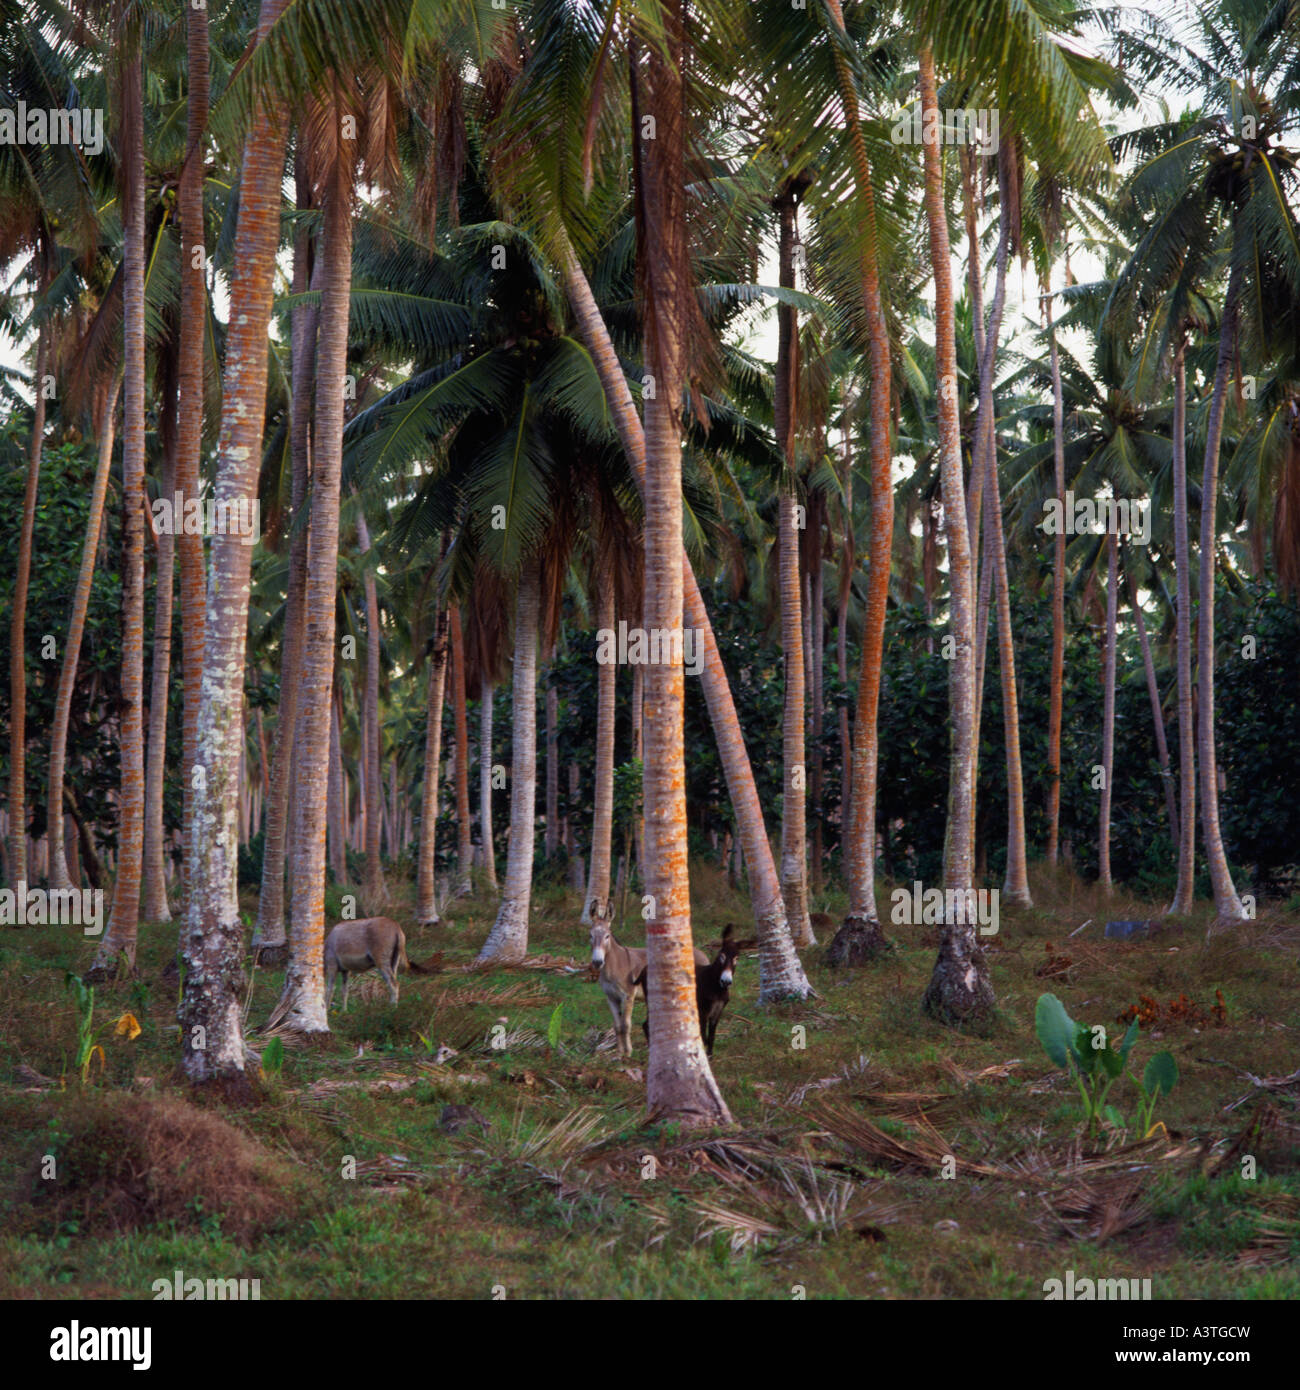 La piantagione di palme con due asini guardando la fotocamera da dietro di albero in primo piano sull'Isola Upolu Samoa occidentale Foto Stock